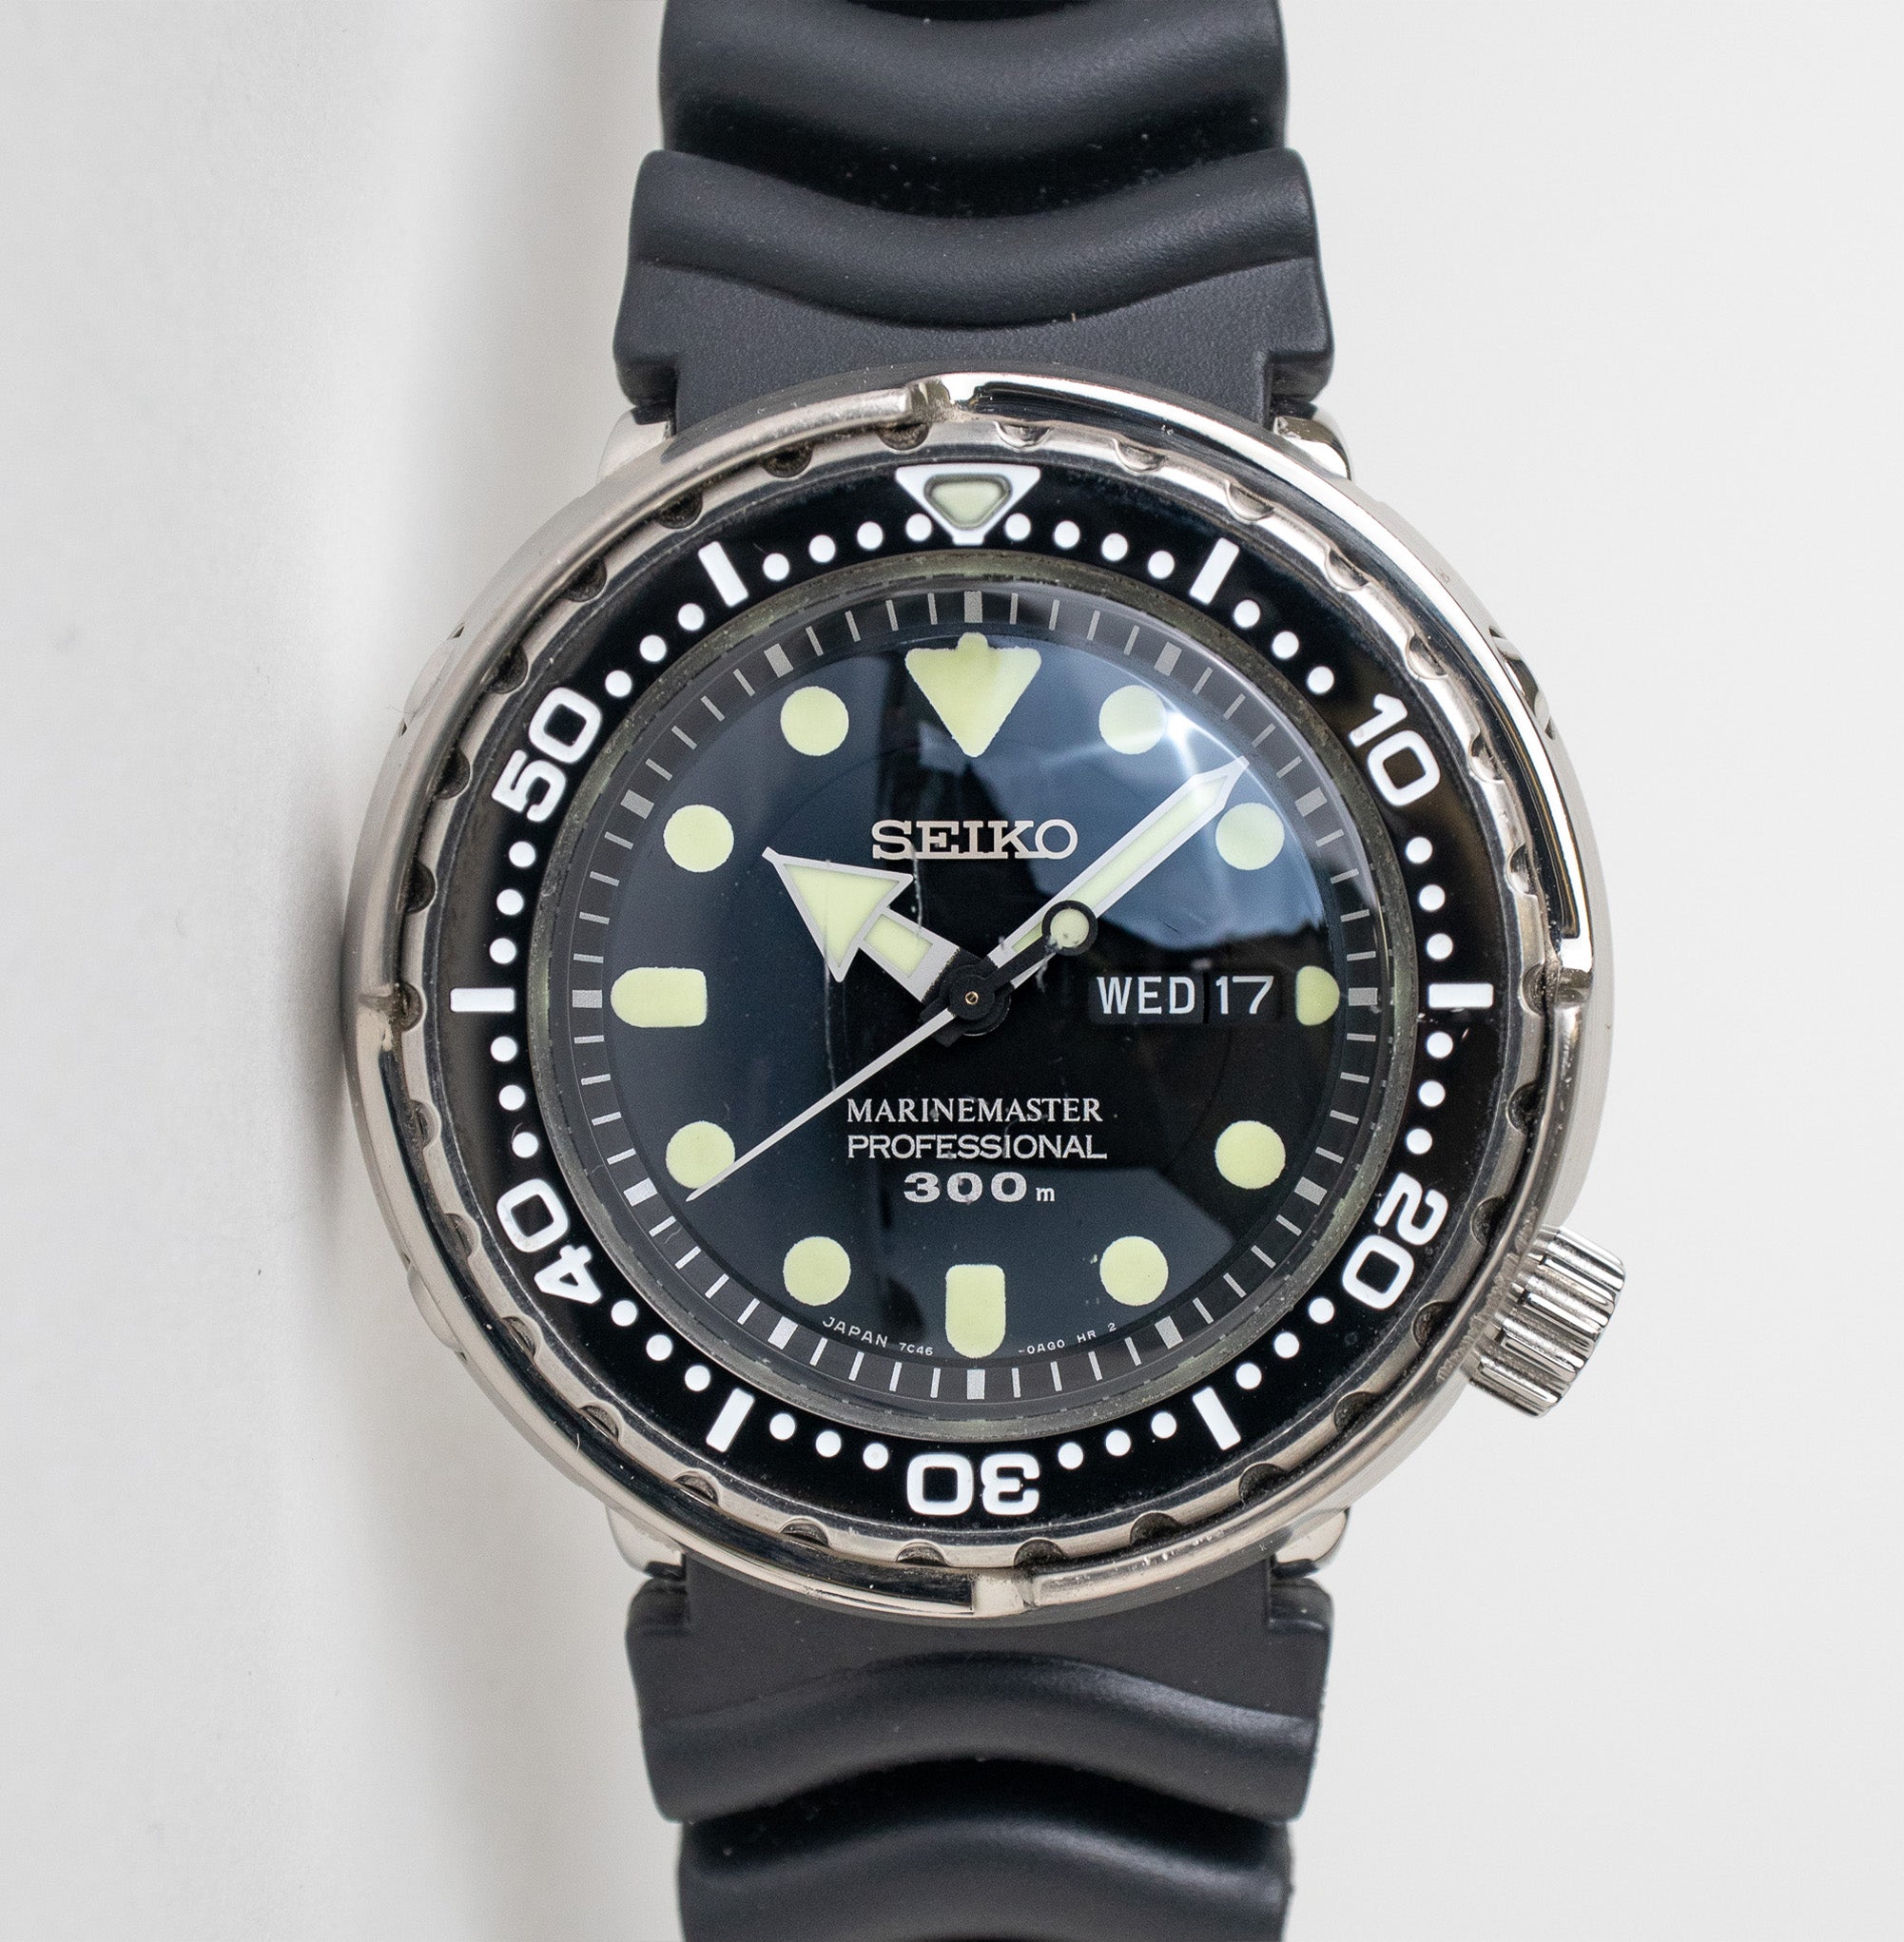 Seiko Marine Master 300M “Tuna” SBBN031 – Belmont Watches